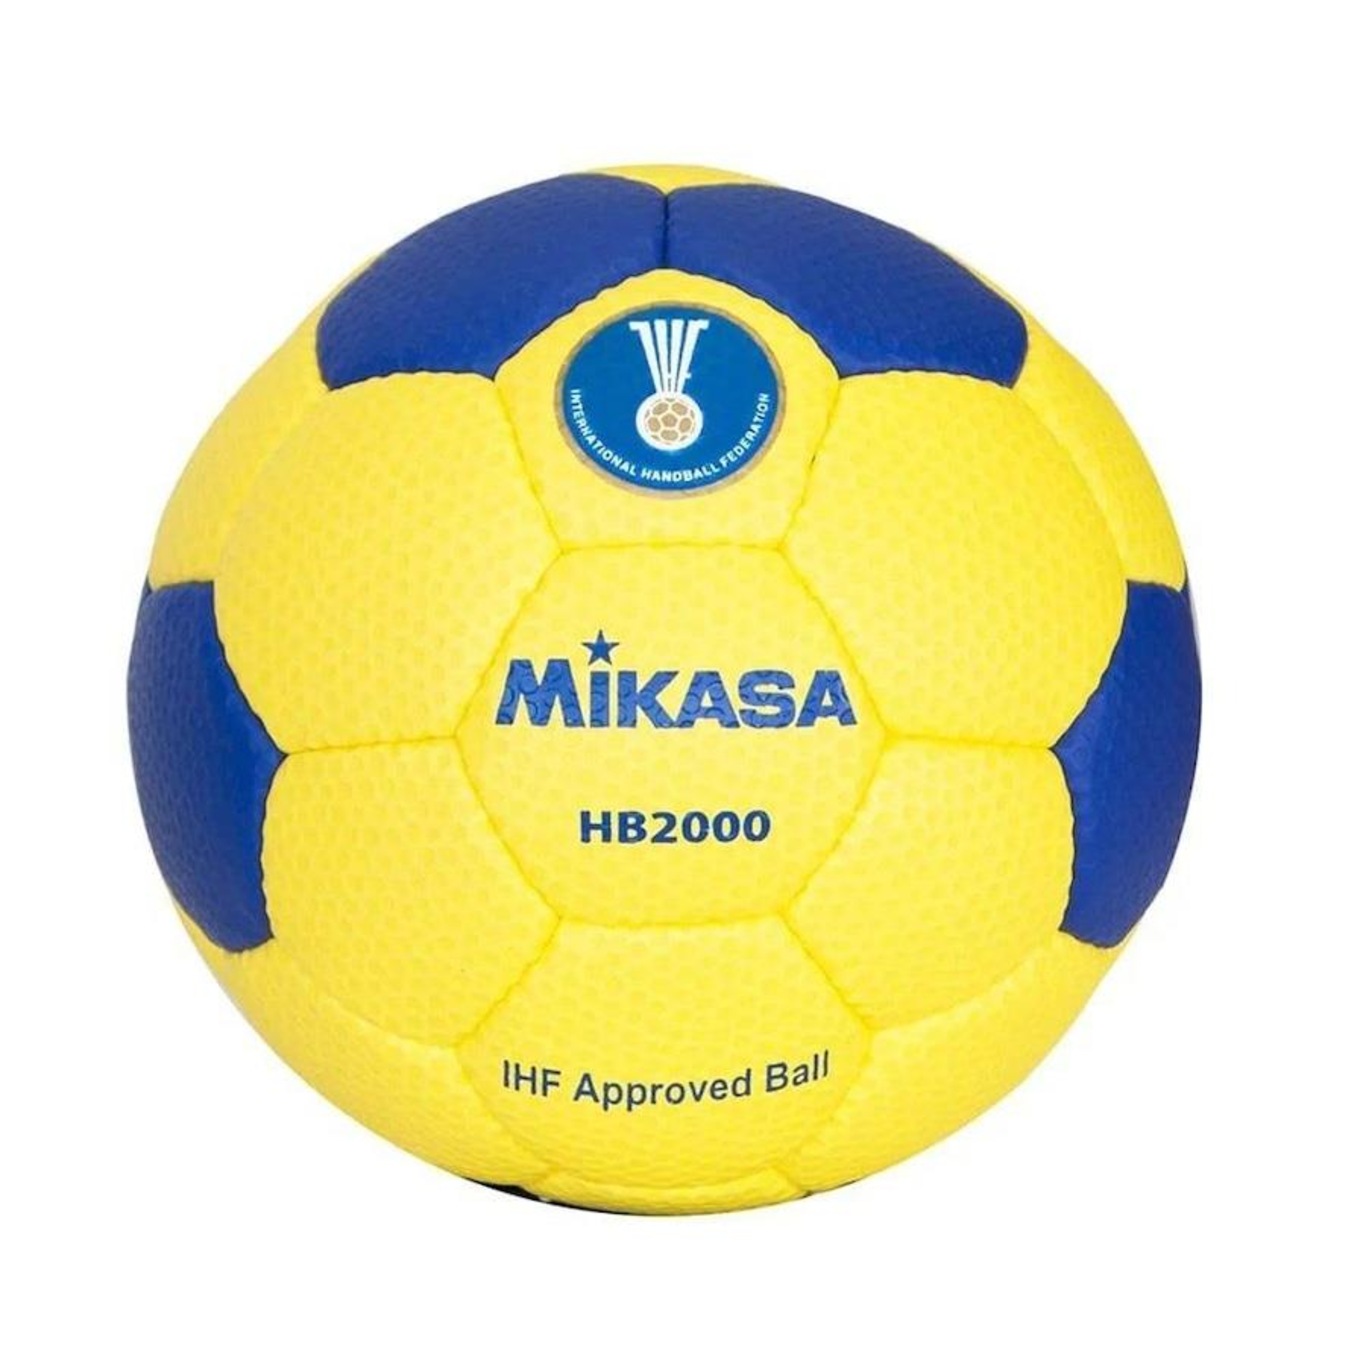 Bola de Handebol Mikasa HB2000 - Foto 1